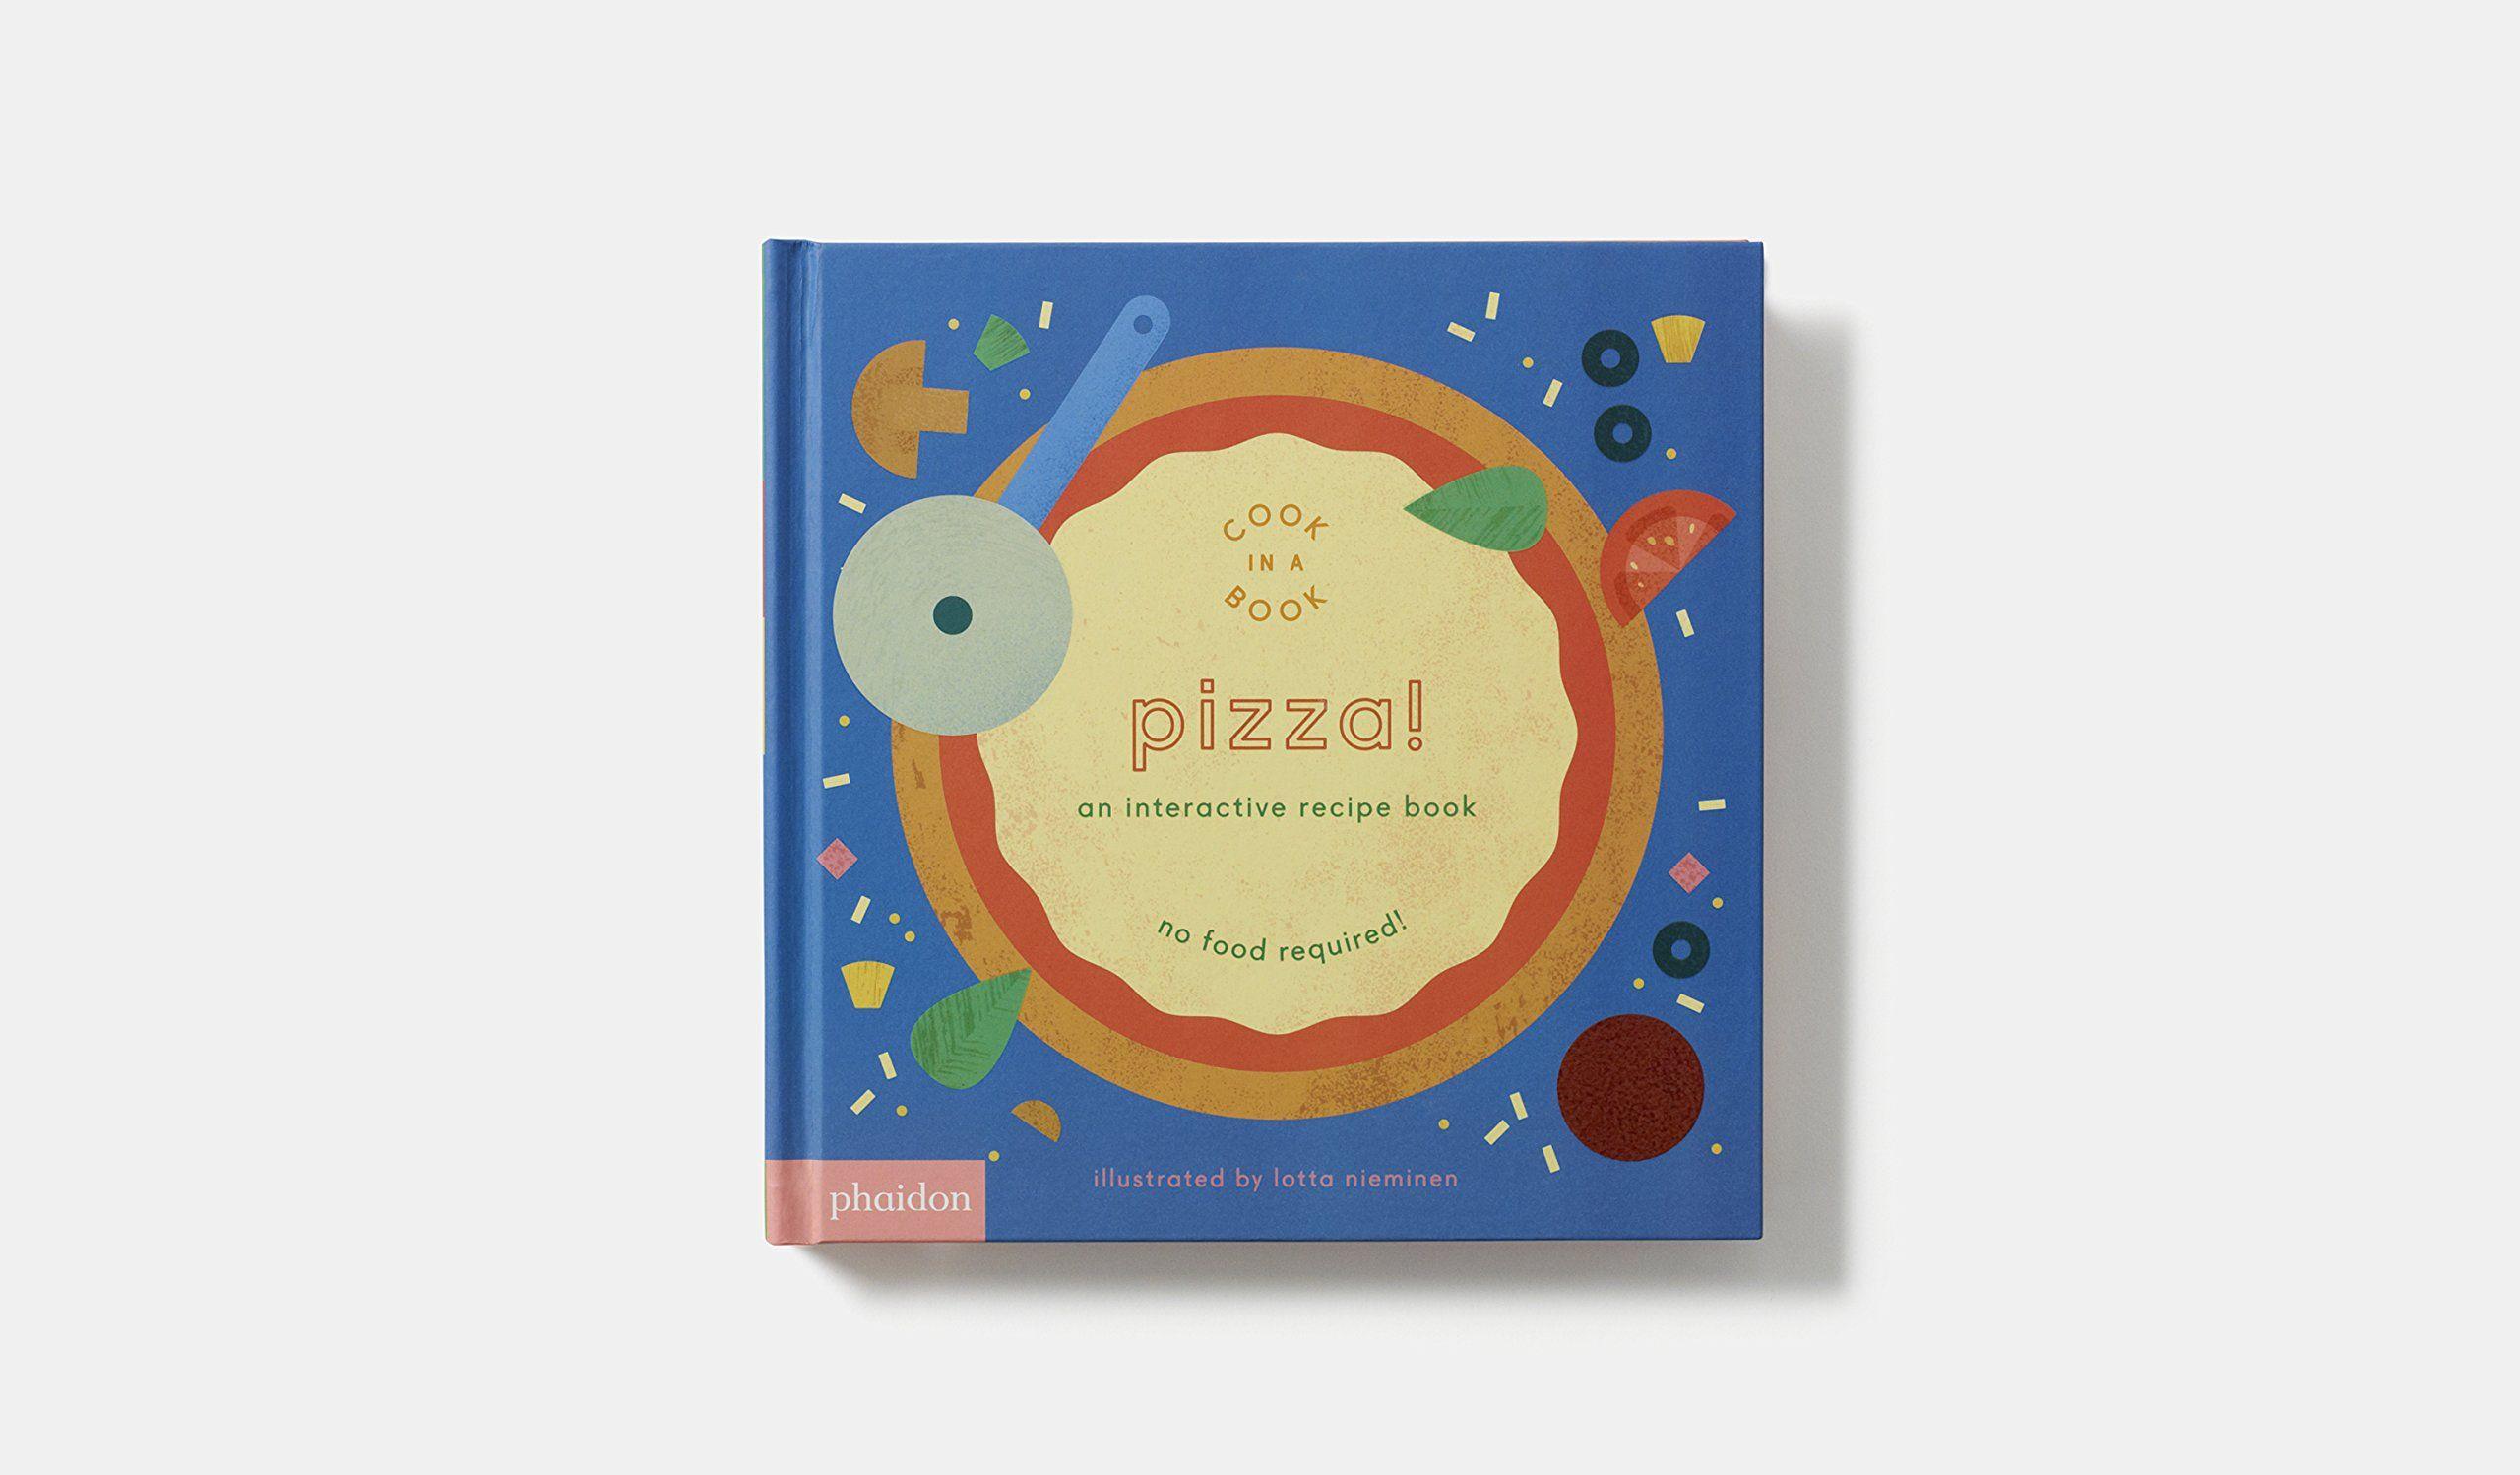 Ina Blue Bird Yellow Circle Logo - Pizza!: An Interactive Recipe Book (Cook In A Book): Amazon.co.uk